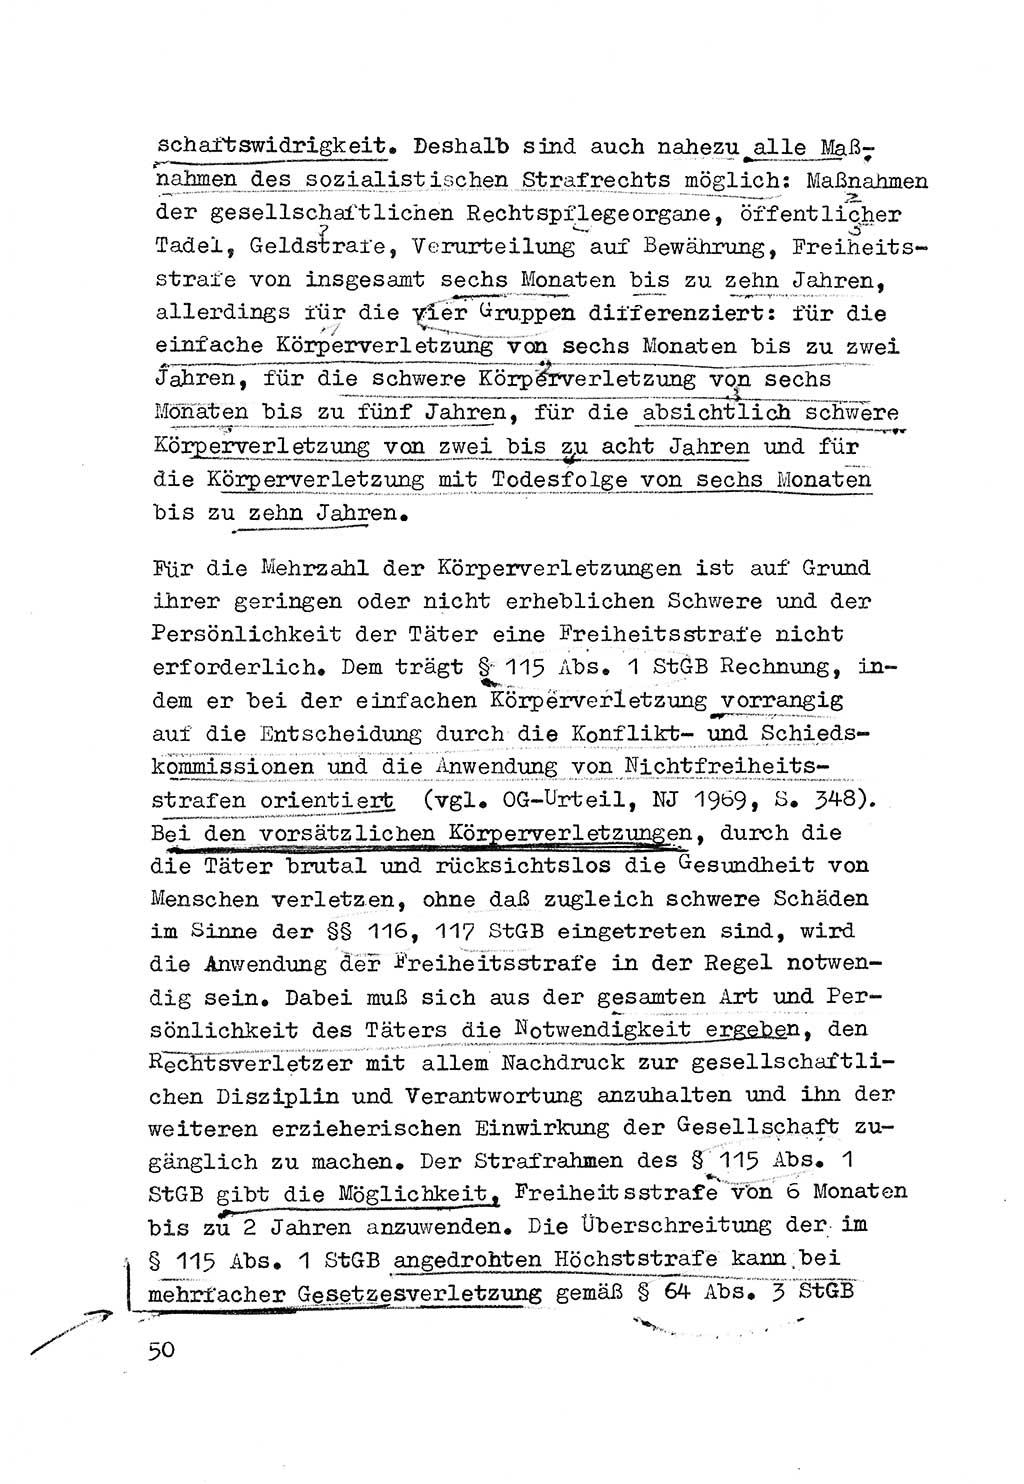 Strafrecht der DDR (Deutsche Demokratische Republik), Besonderer Teil, Lehrmaterial, Heft 3 1969, Seite 50 (Strafr. DDR BT Lehrmat. H. 3 1969, S. 50)